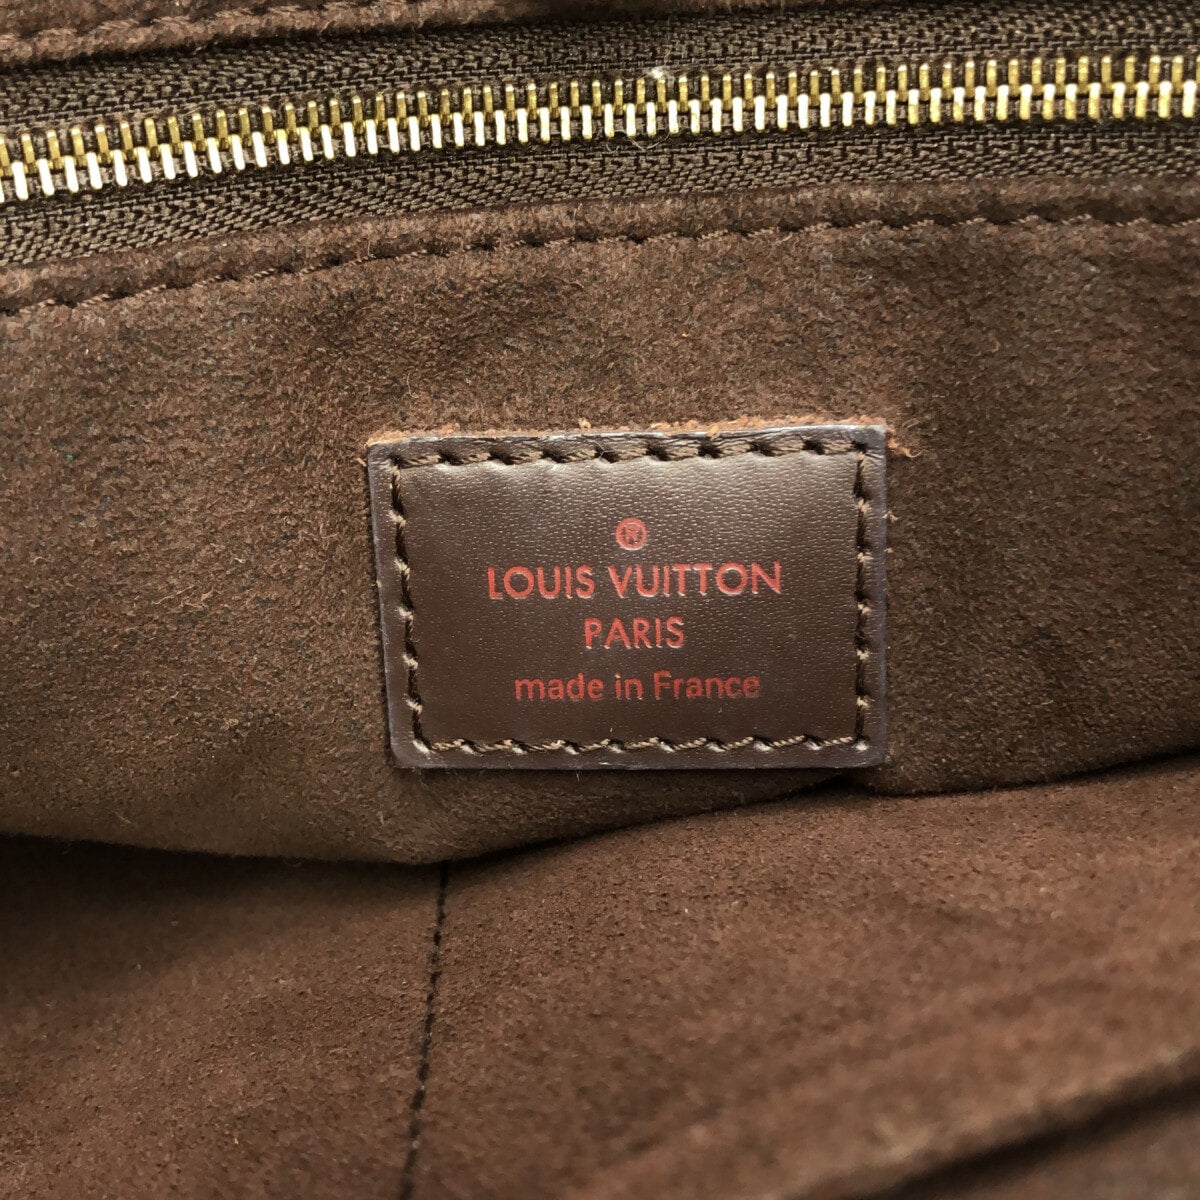 Louis Vuitton Marylebone